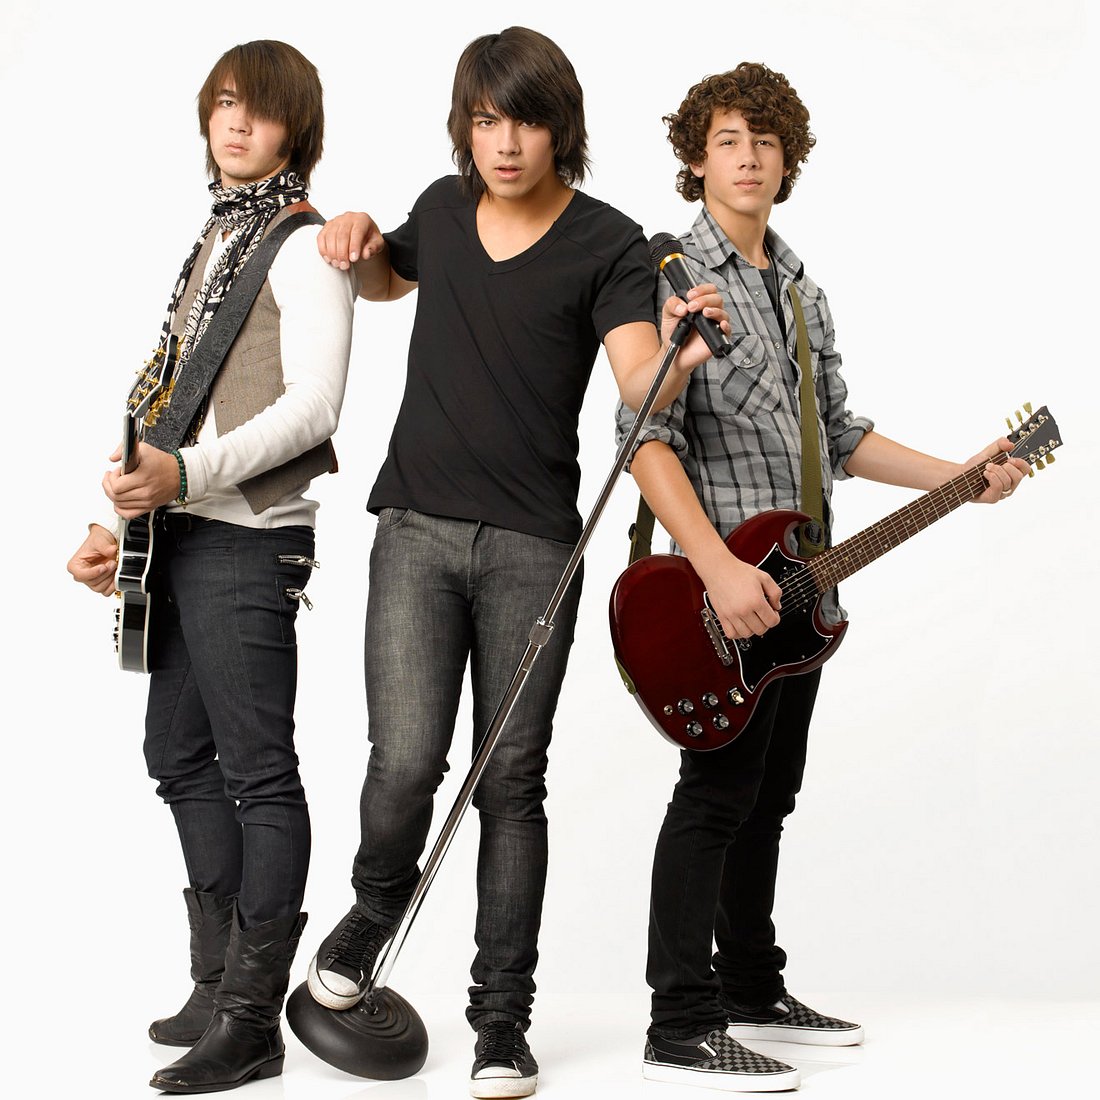 Ihre Rollen in Camp Rock machten die Jonas Brothers weltberühmt